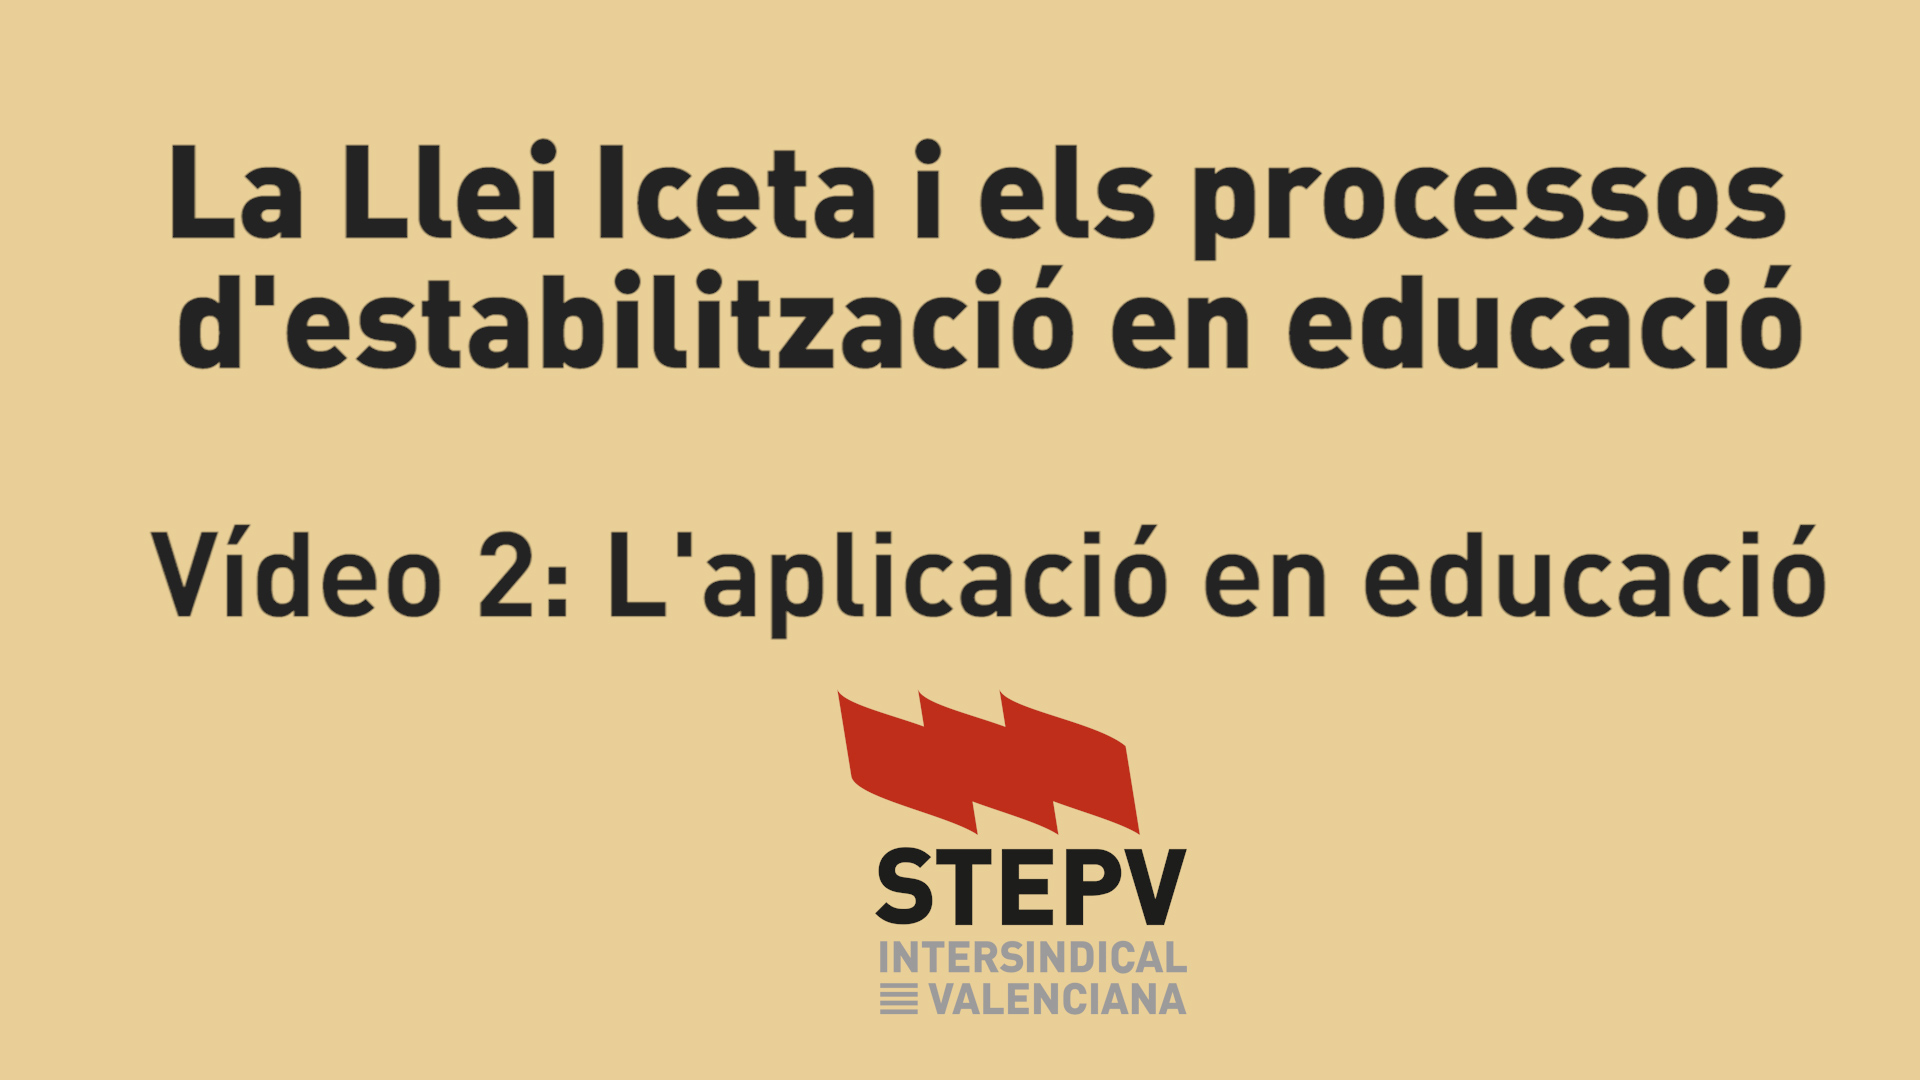 La Llei Iceta i els processos d’estabilització (II) L’aplicació en educació